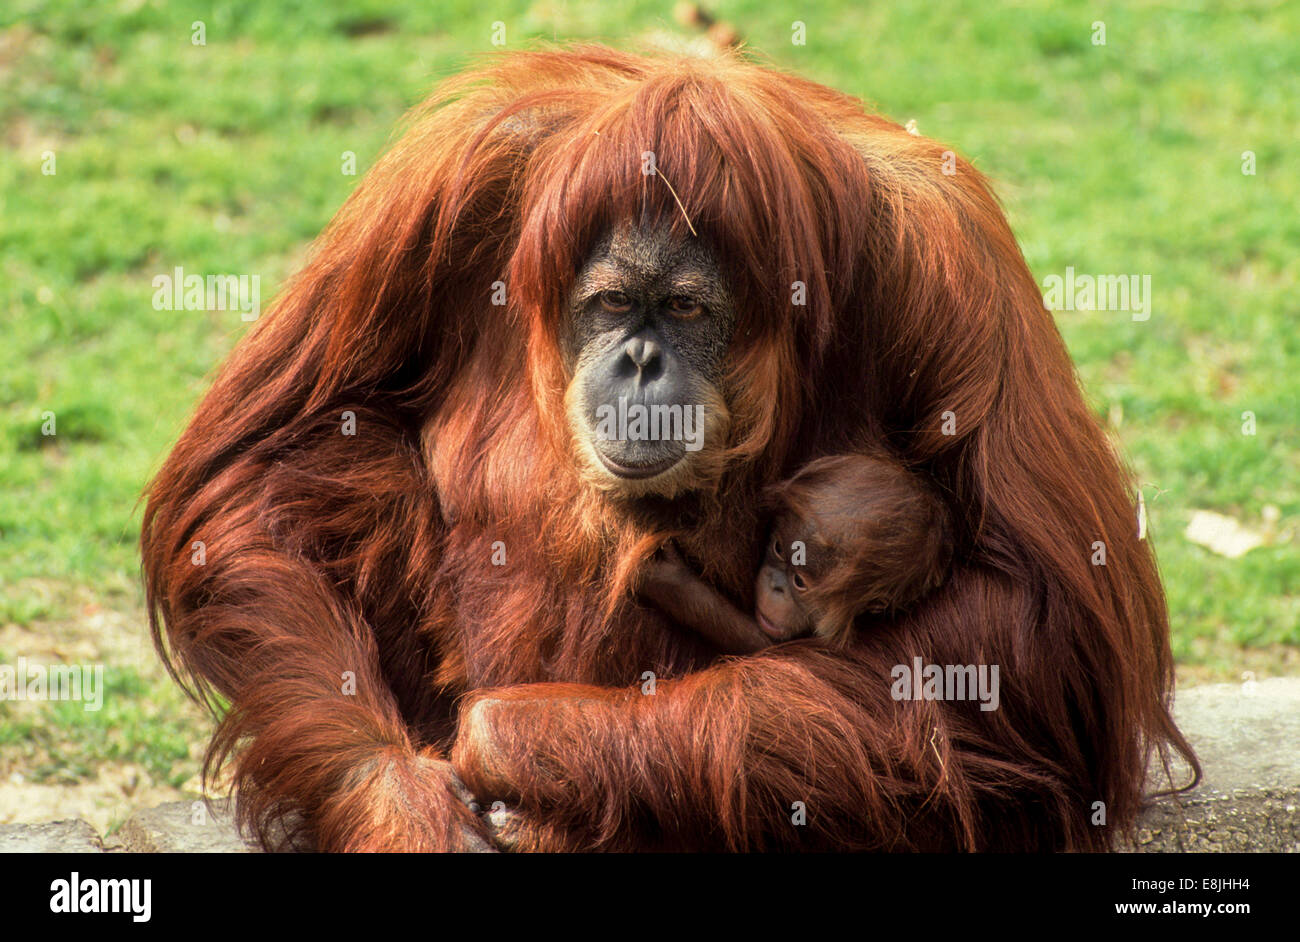 Sumatran orangutan (Pongo abelii or Pongo pygmaeus abelii) mother with infant In a zoo Stock Photo